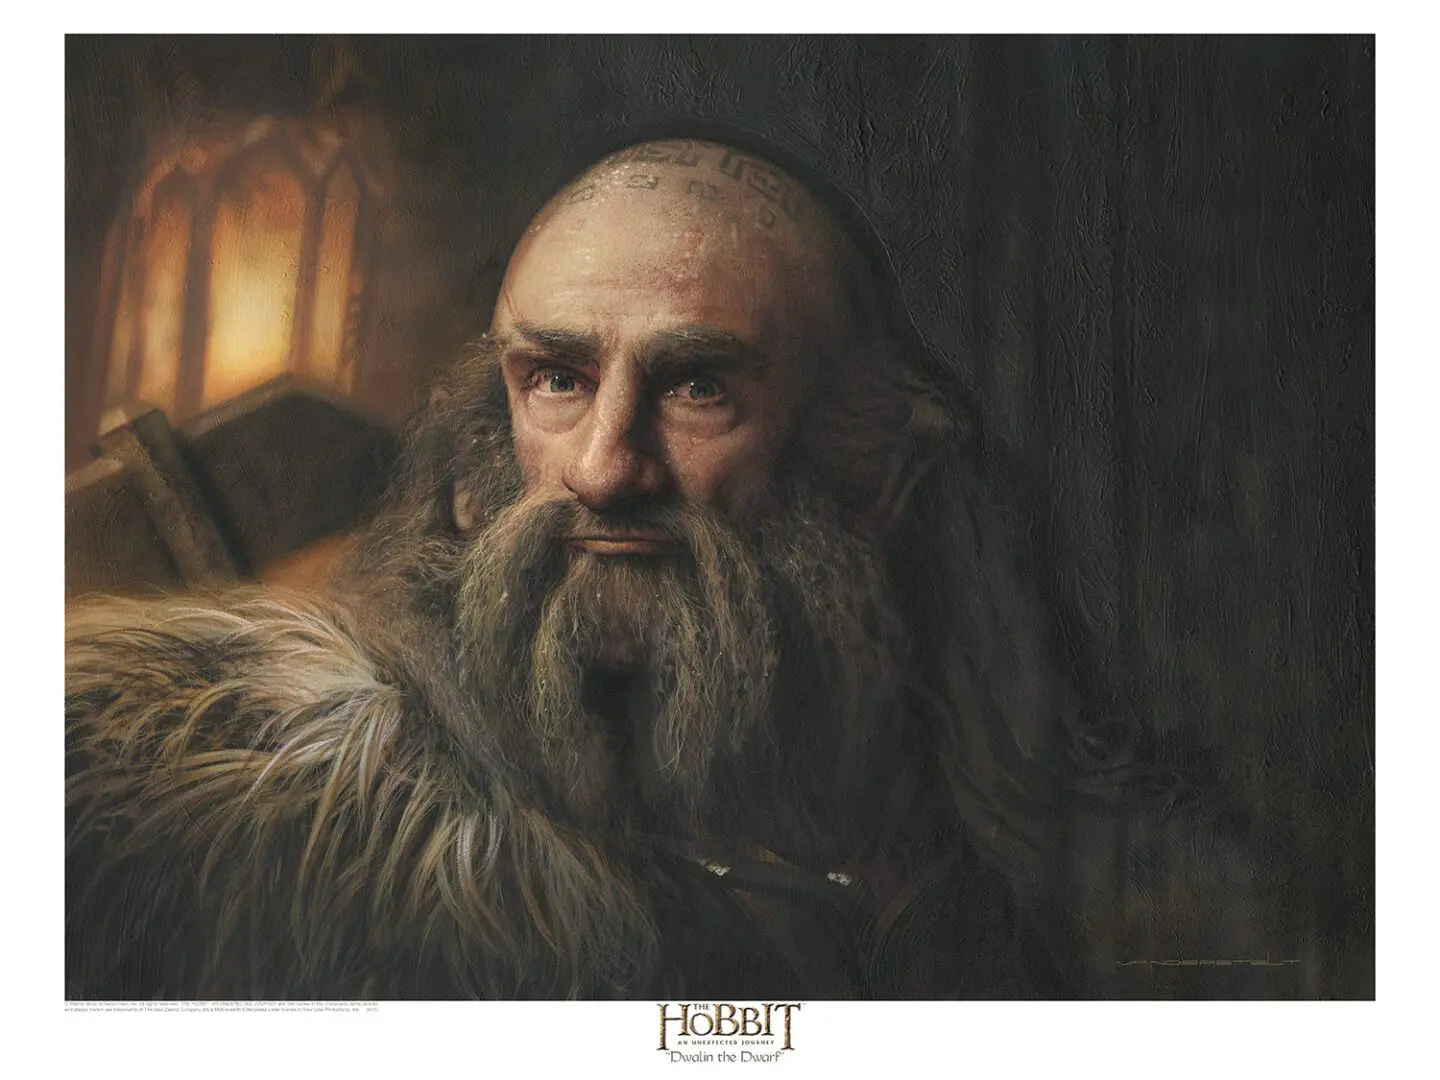 A Dwalin the Dwarf Print of an old man with a beard.